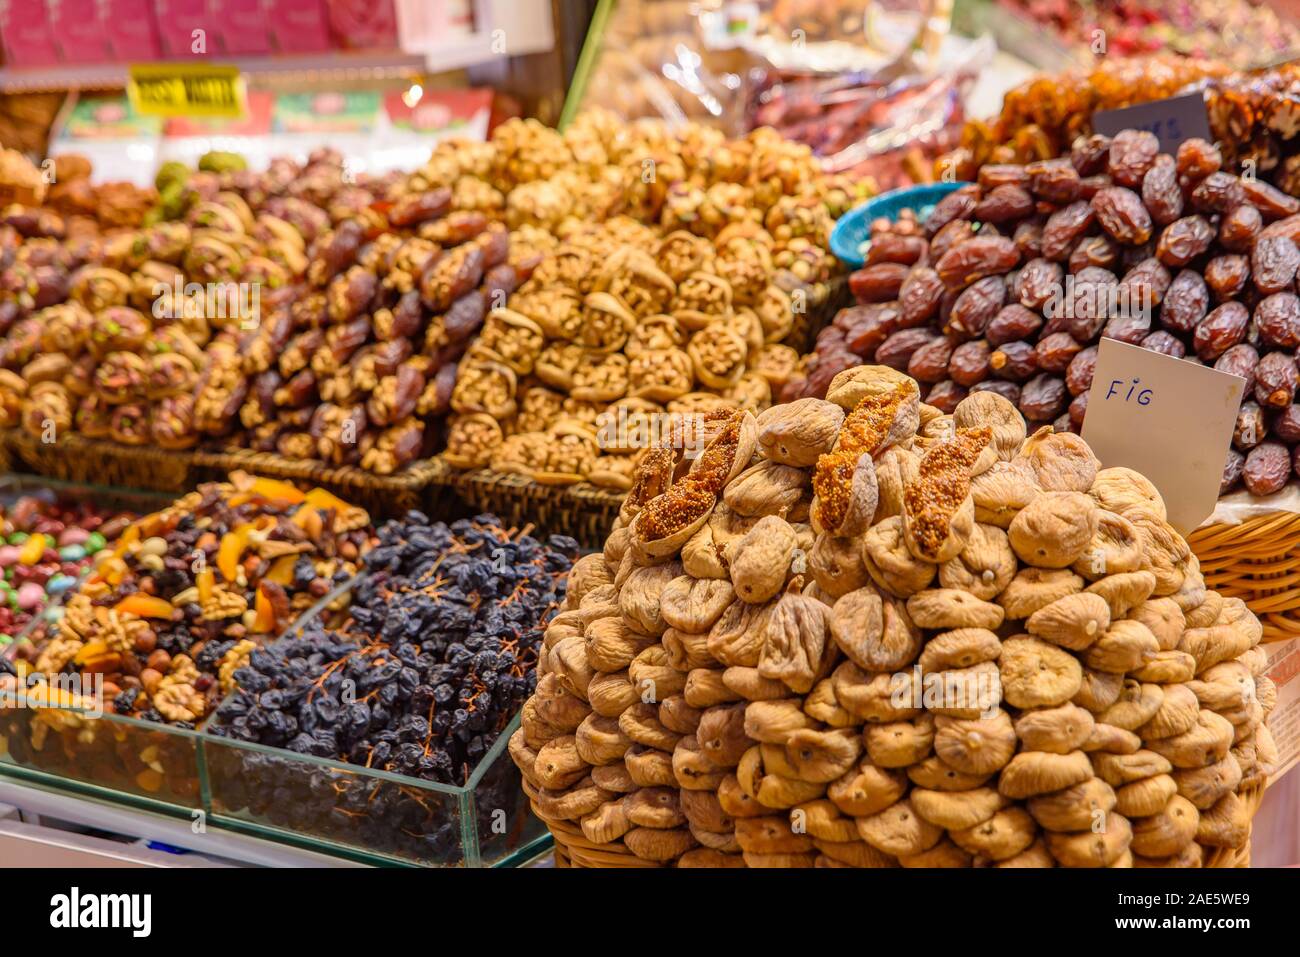 Décrochage vendant des fruits secs dans le bazar aux épices (bazar égyptien), un marché couvert à Istanbul, Turquie Banque D'Images